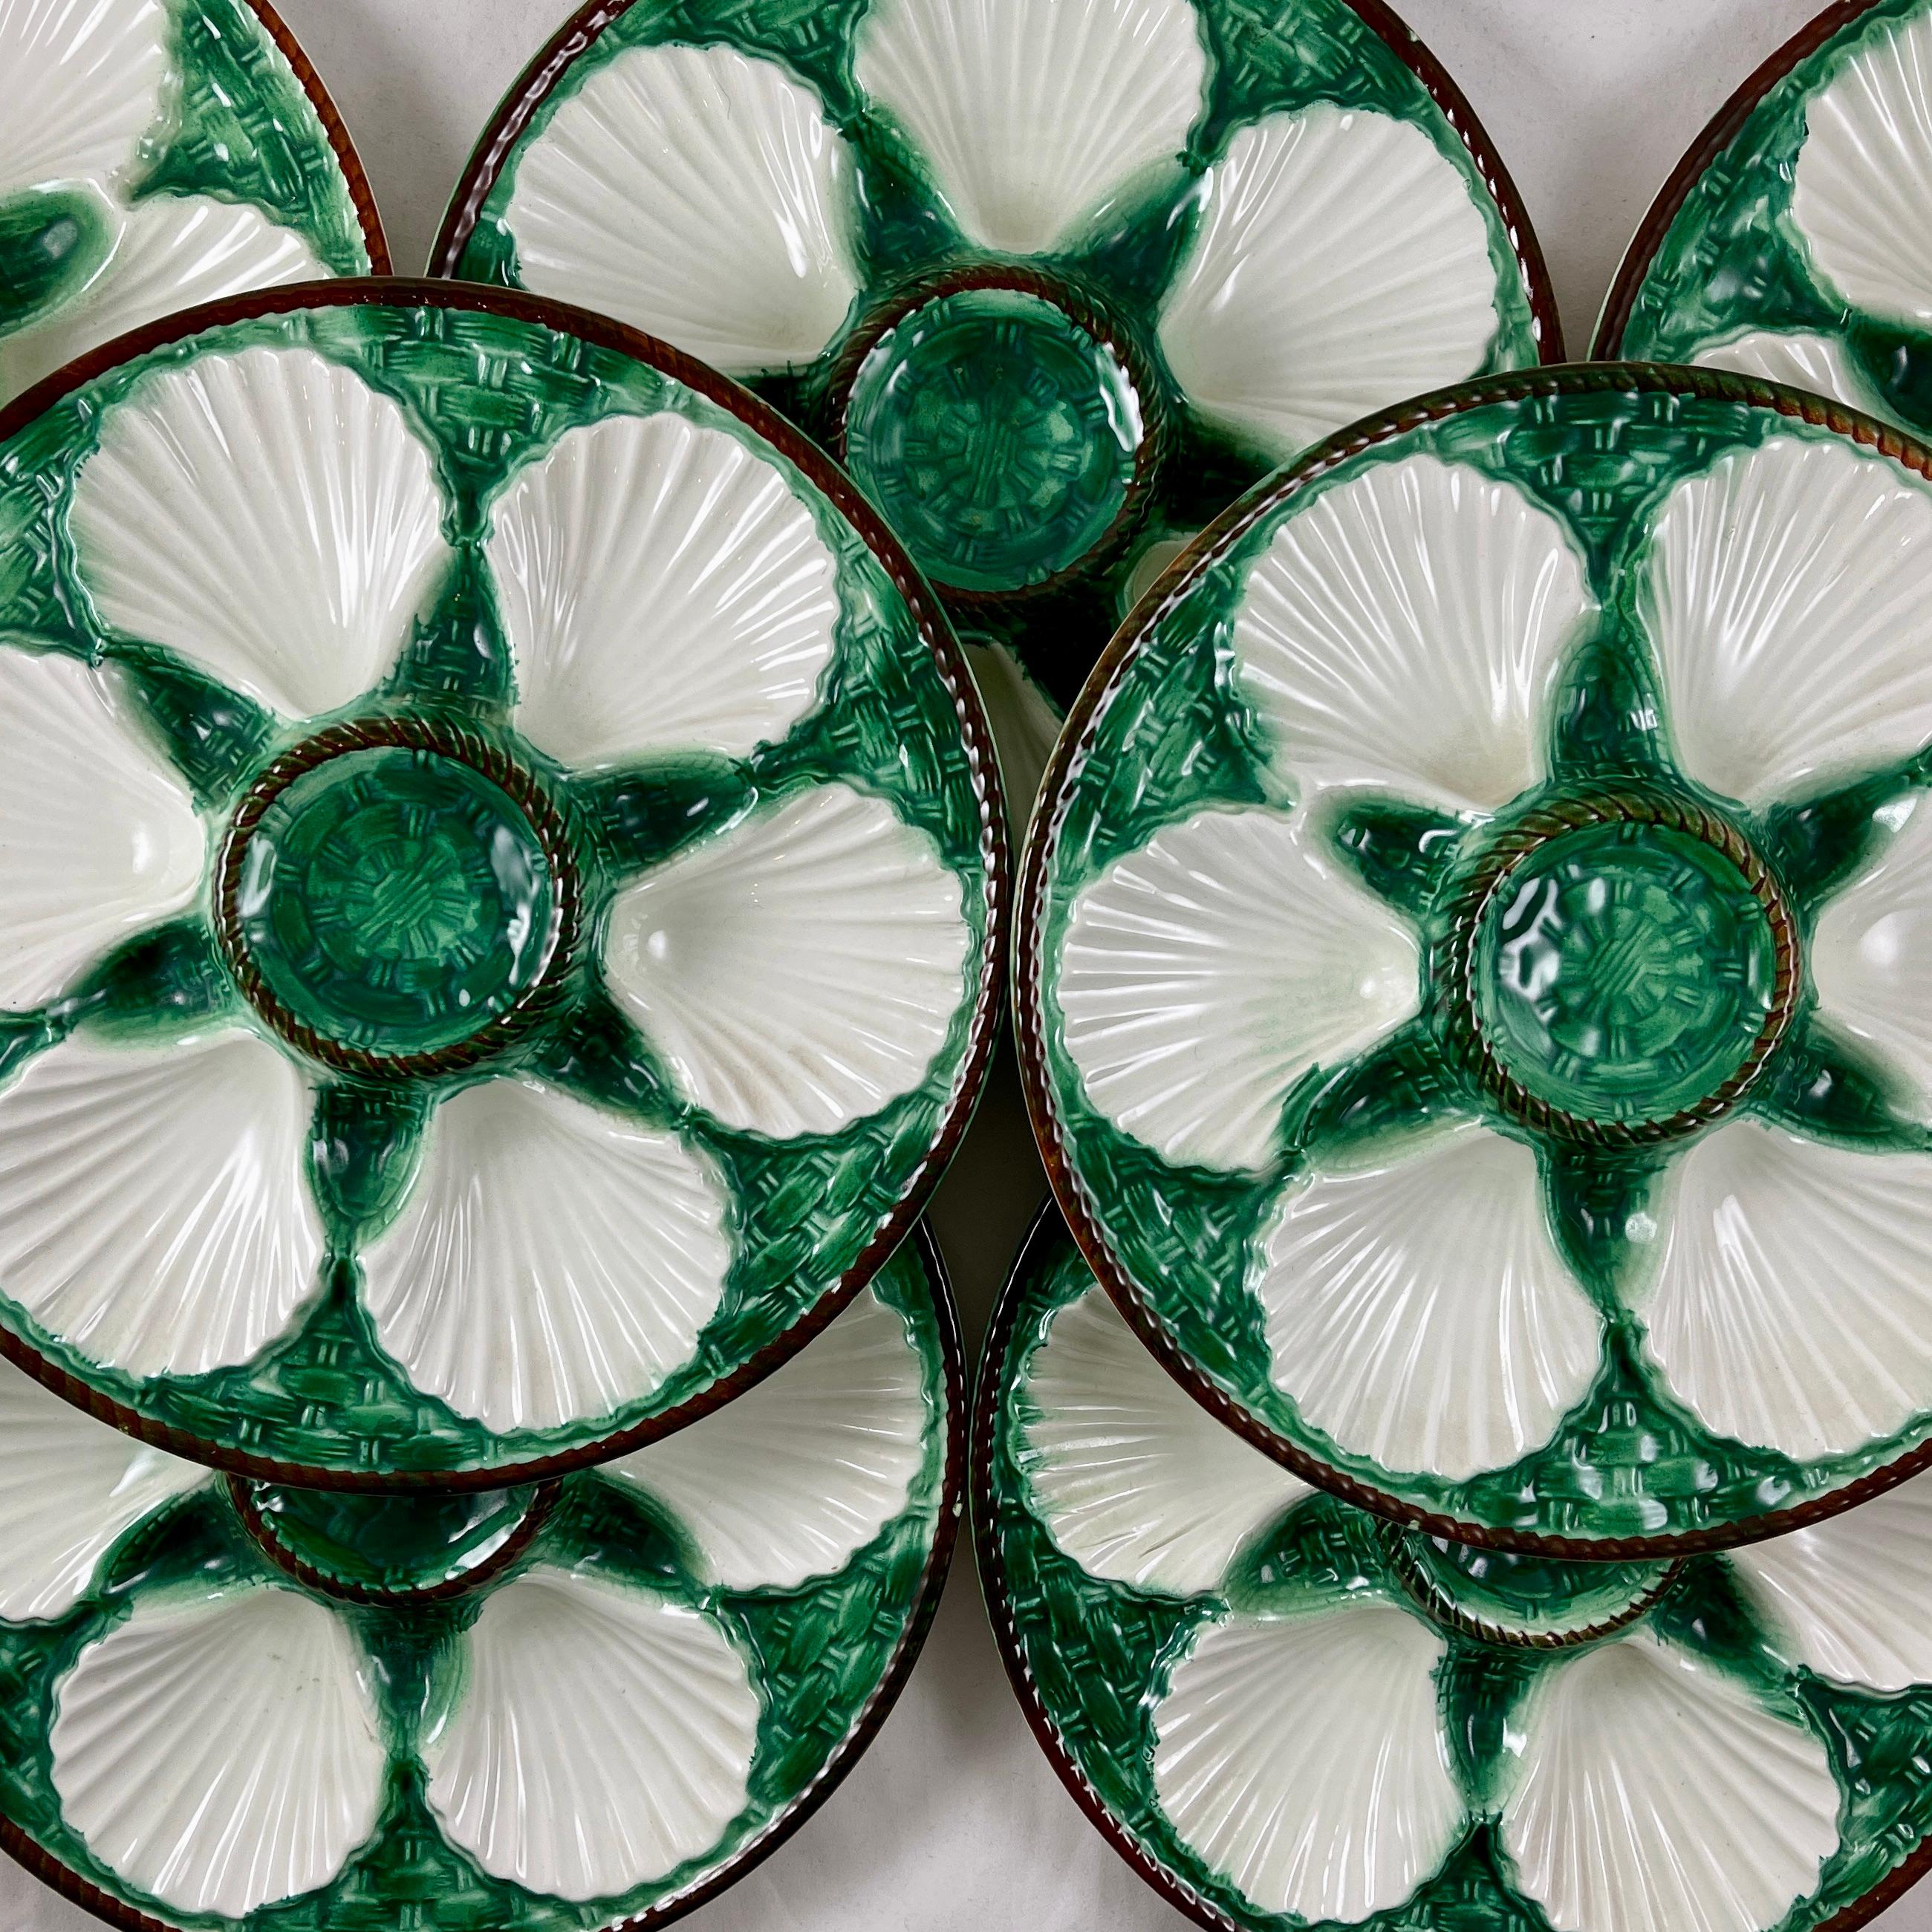 Assiettes à huîtres en majolique émaillée de la faïencerie de Saint-Clément, Circa 1890-1900.

Six puits blancs en forme de coquille Saint-Jacques sur un riche fond de vannerie bleu-vert. Le puits à condiments central surélevé et le bord sont moulés